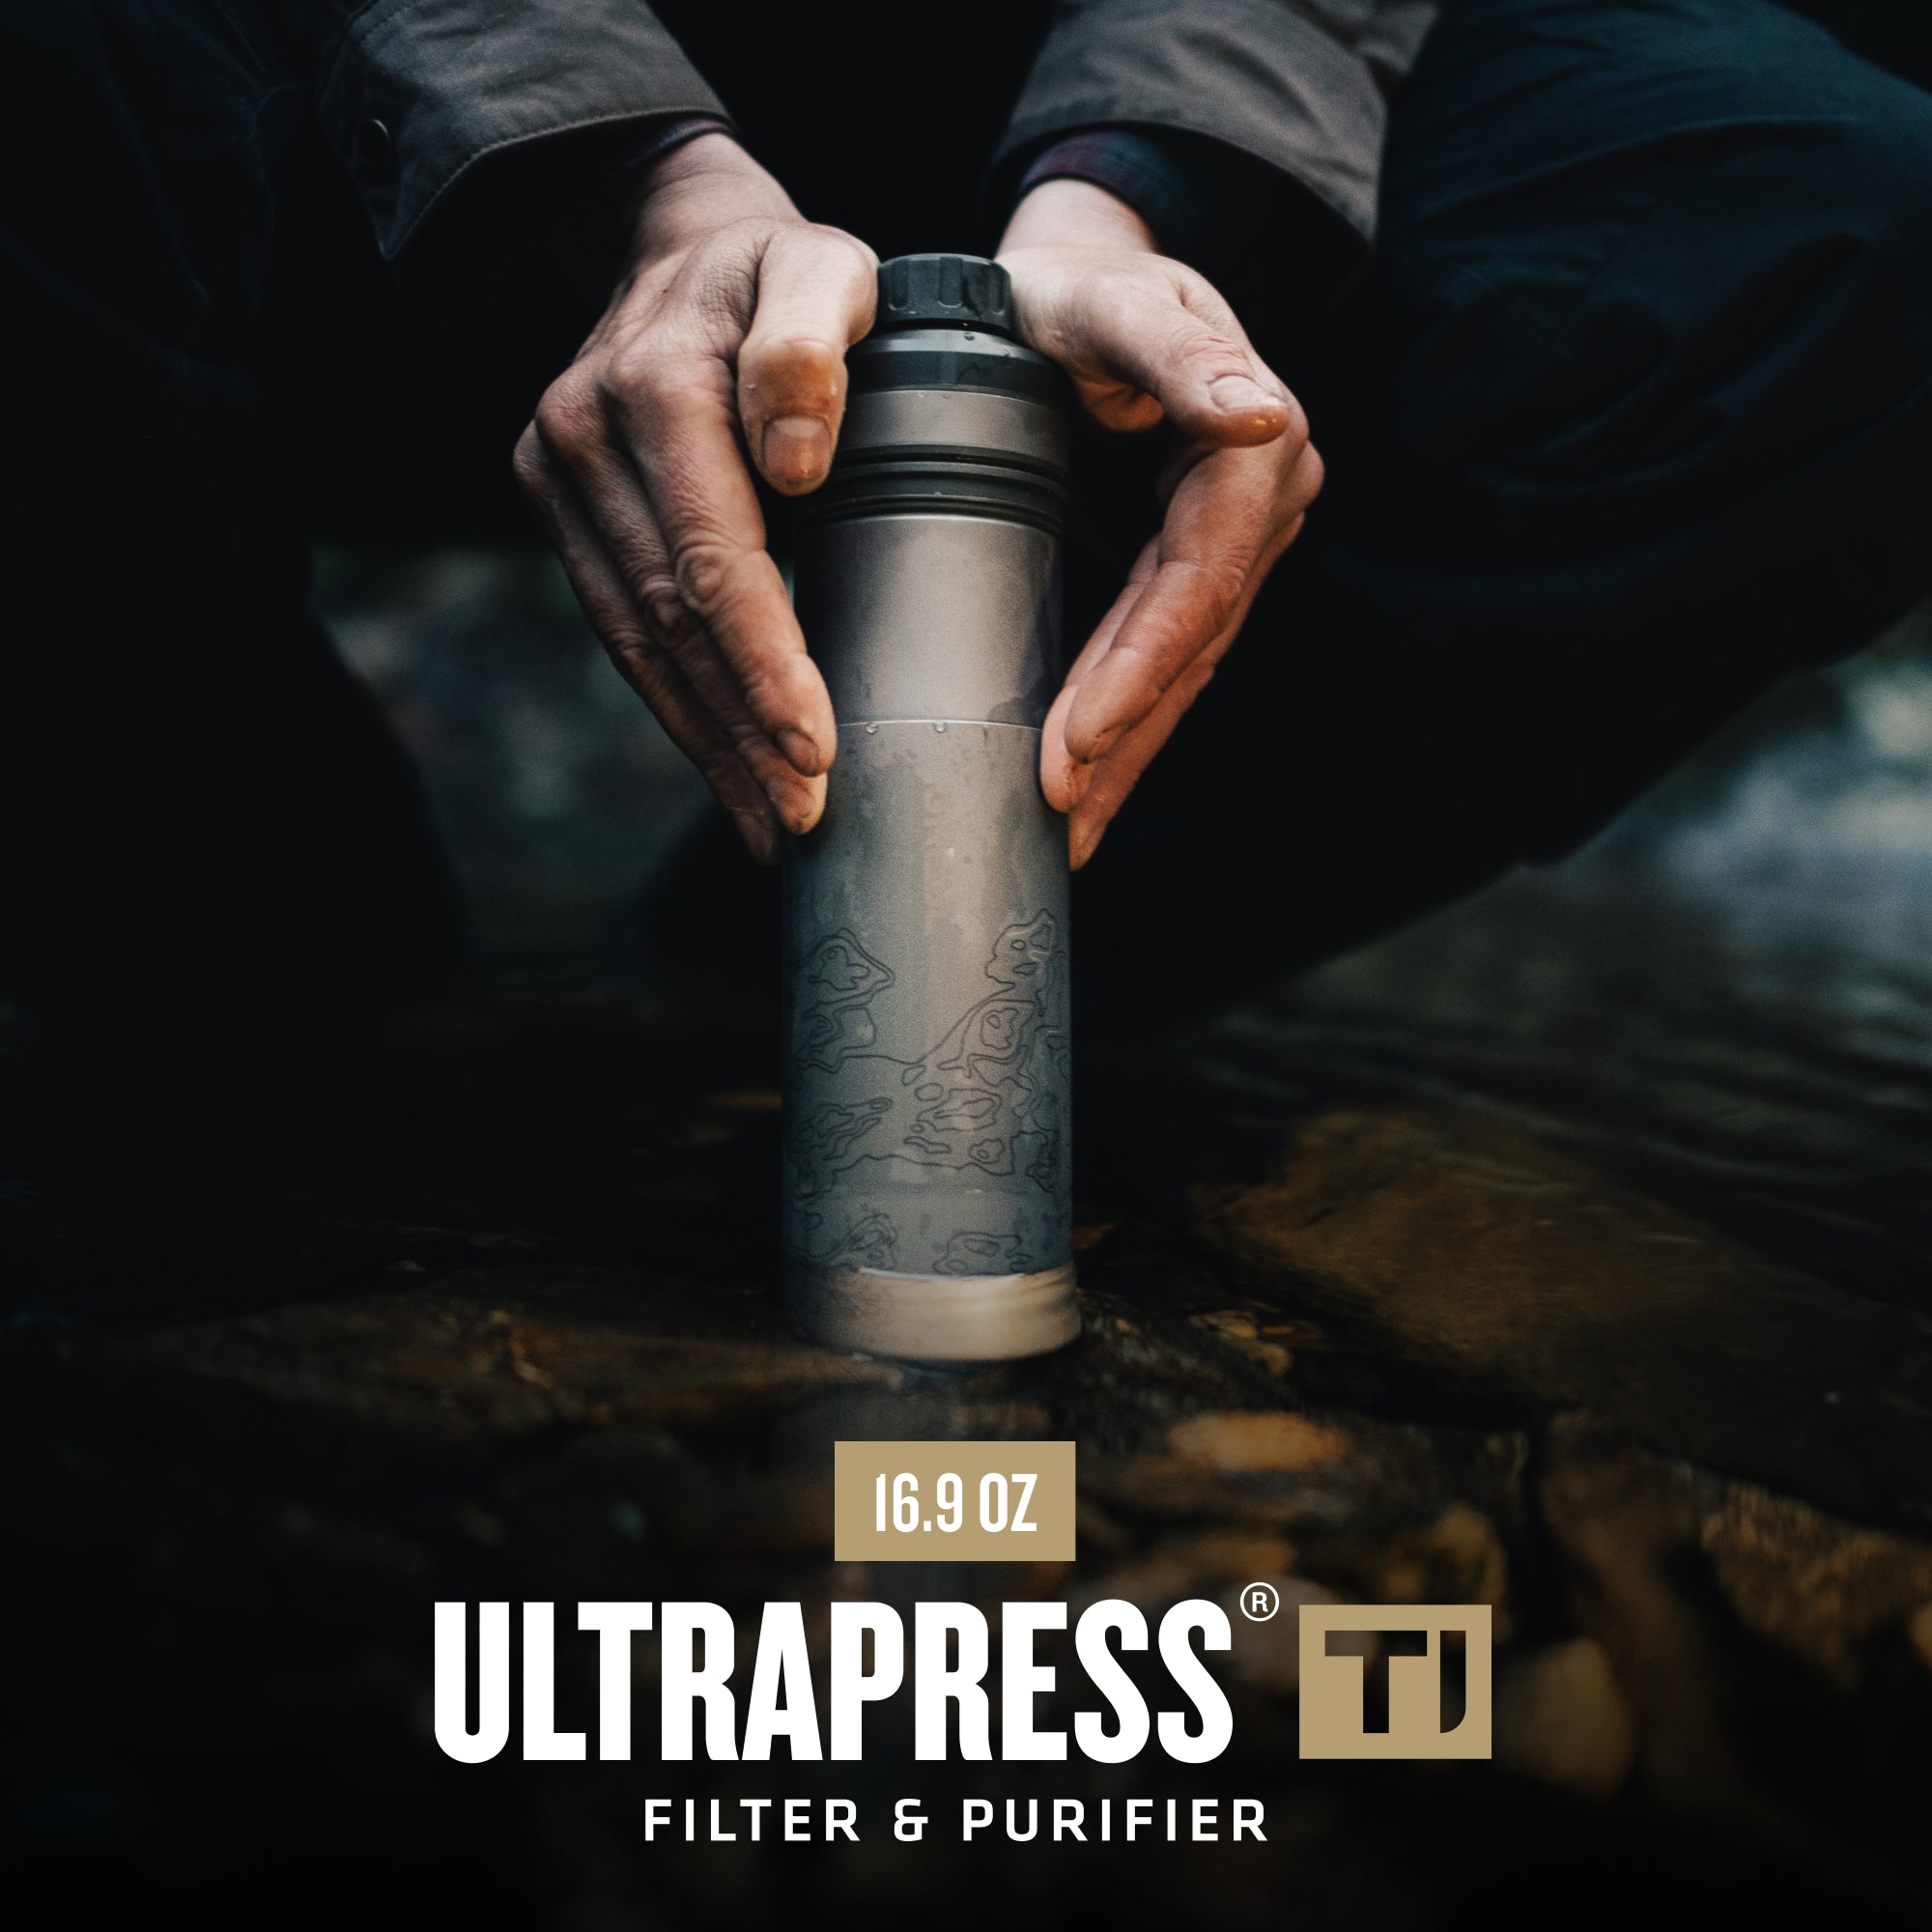 UltraPress Titanium Filter & Purifier